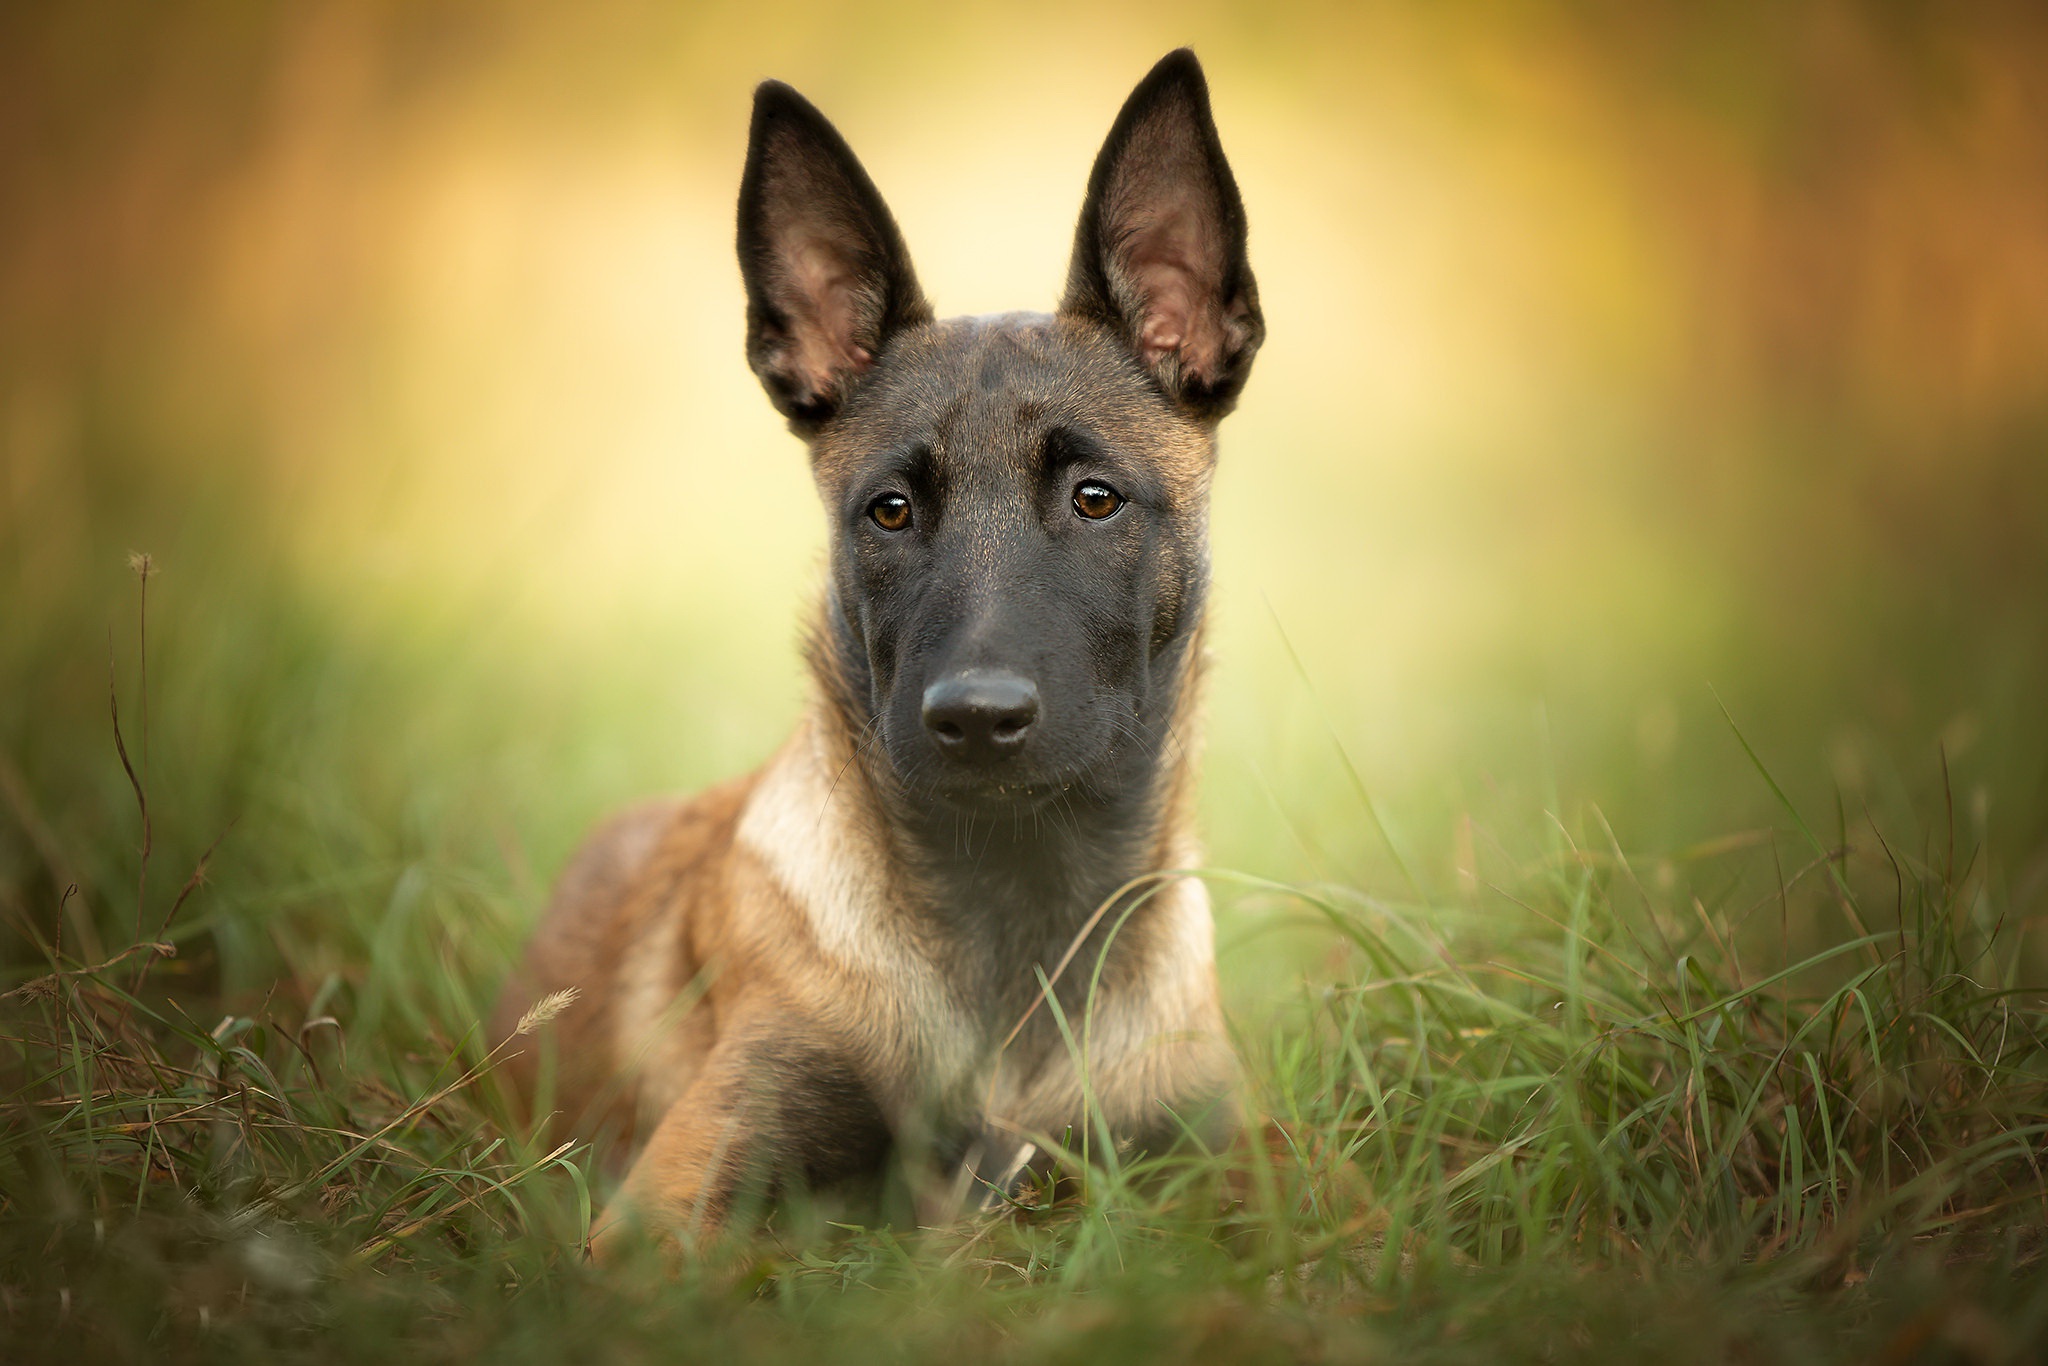 Free download wallpaper Dogs, Dog, Animal, Belgian Shepherd, Malinois on your PC desktop